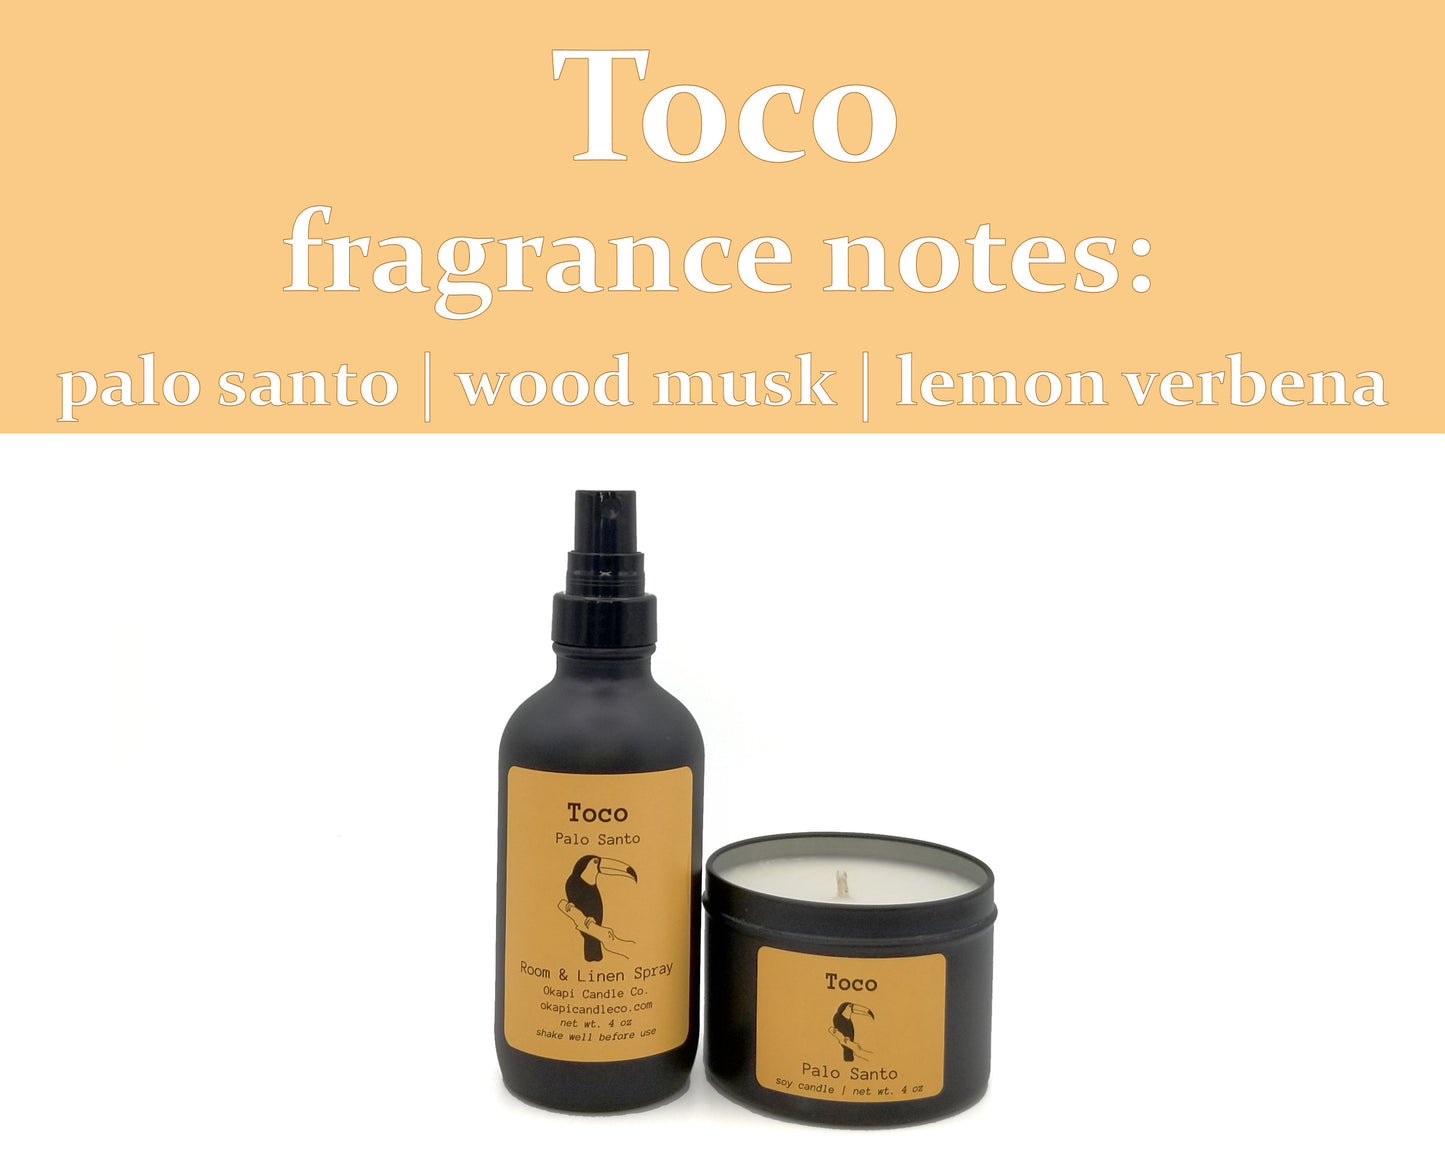 Toco Toucan Room & Linen Spray - Palo Santo Fragrance